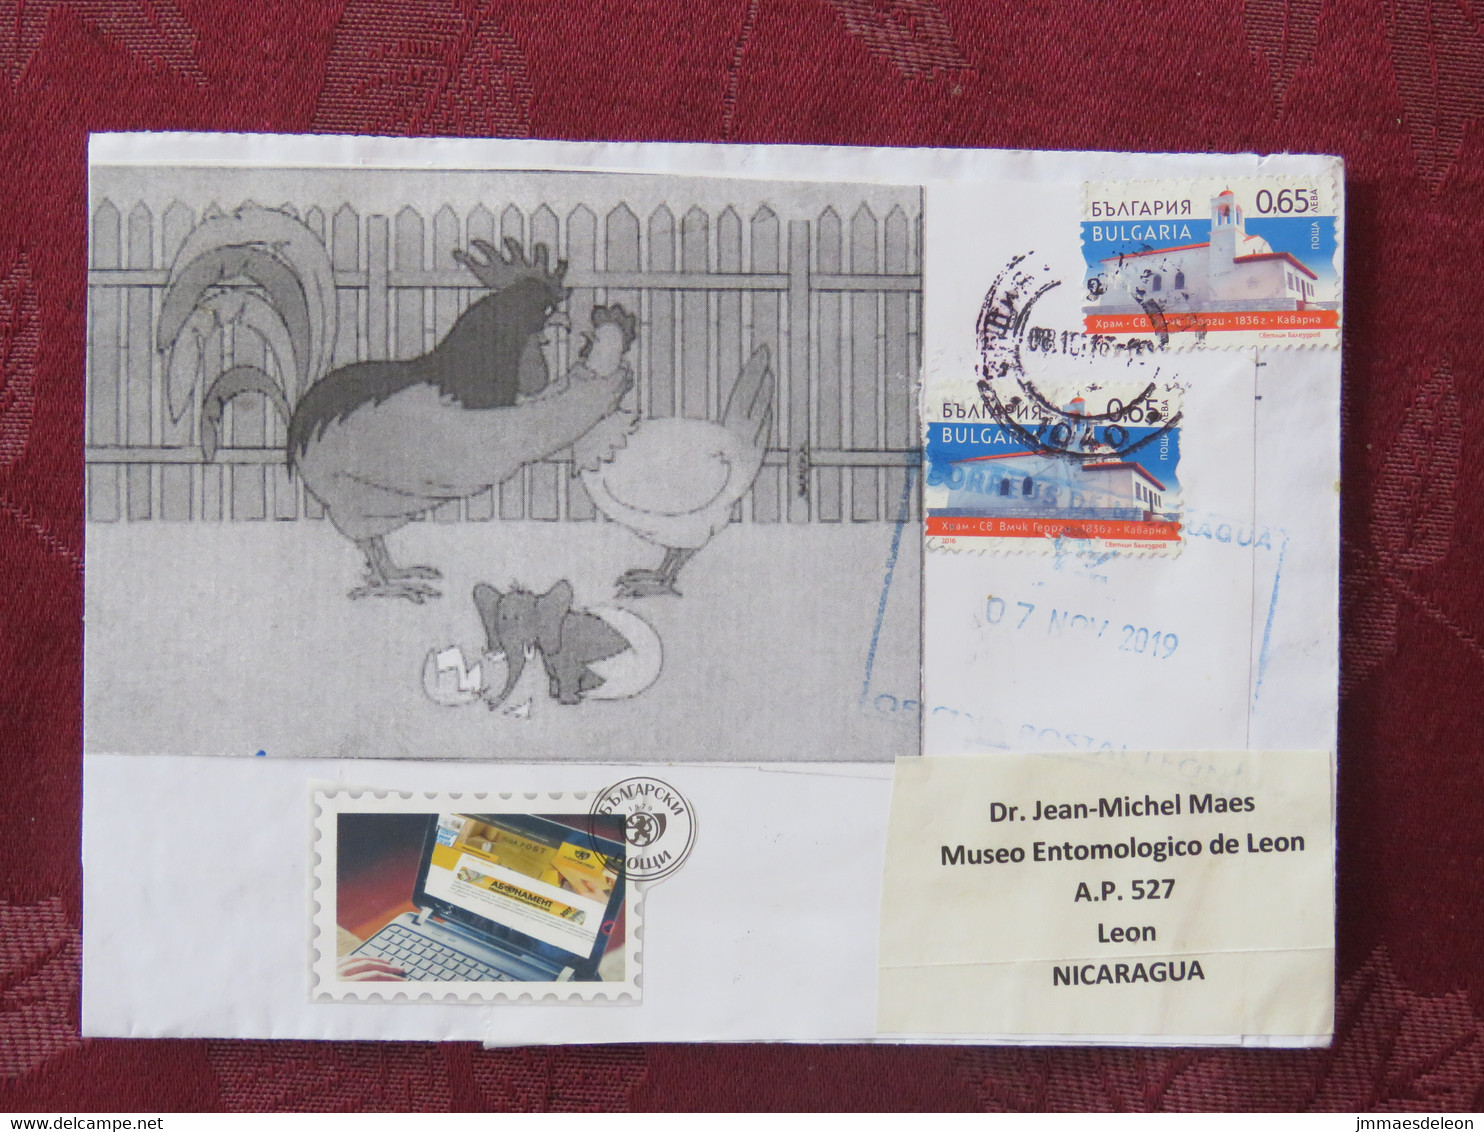 Bulgaria 2019 Cover To Nicaragua - Church - Chicken - Computer - Cartas & Documentos